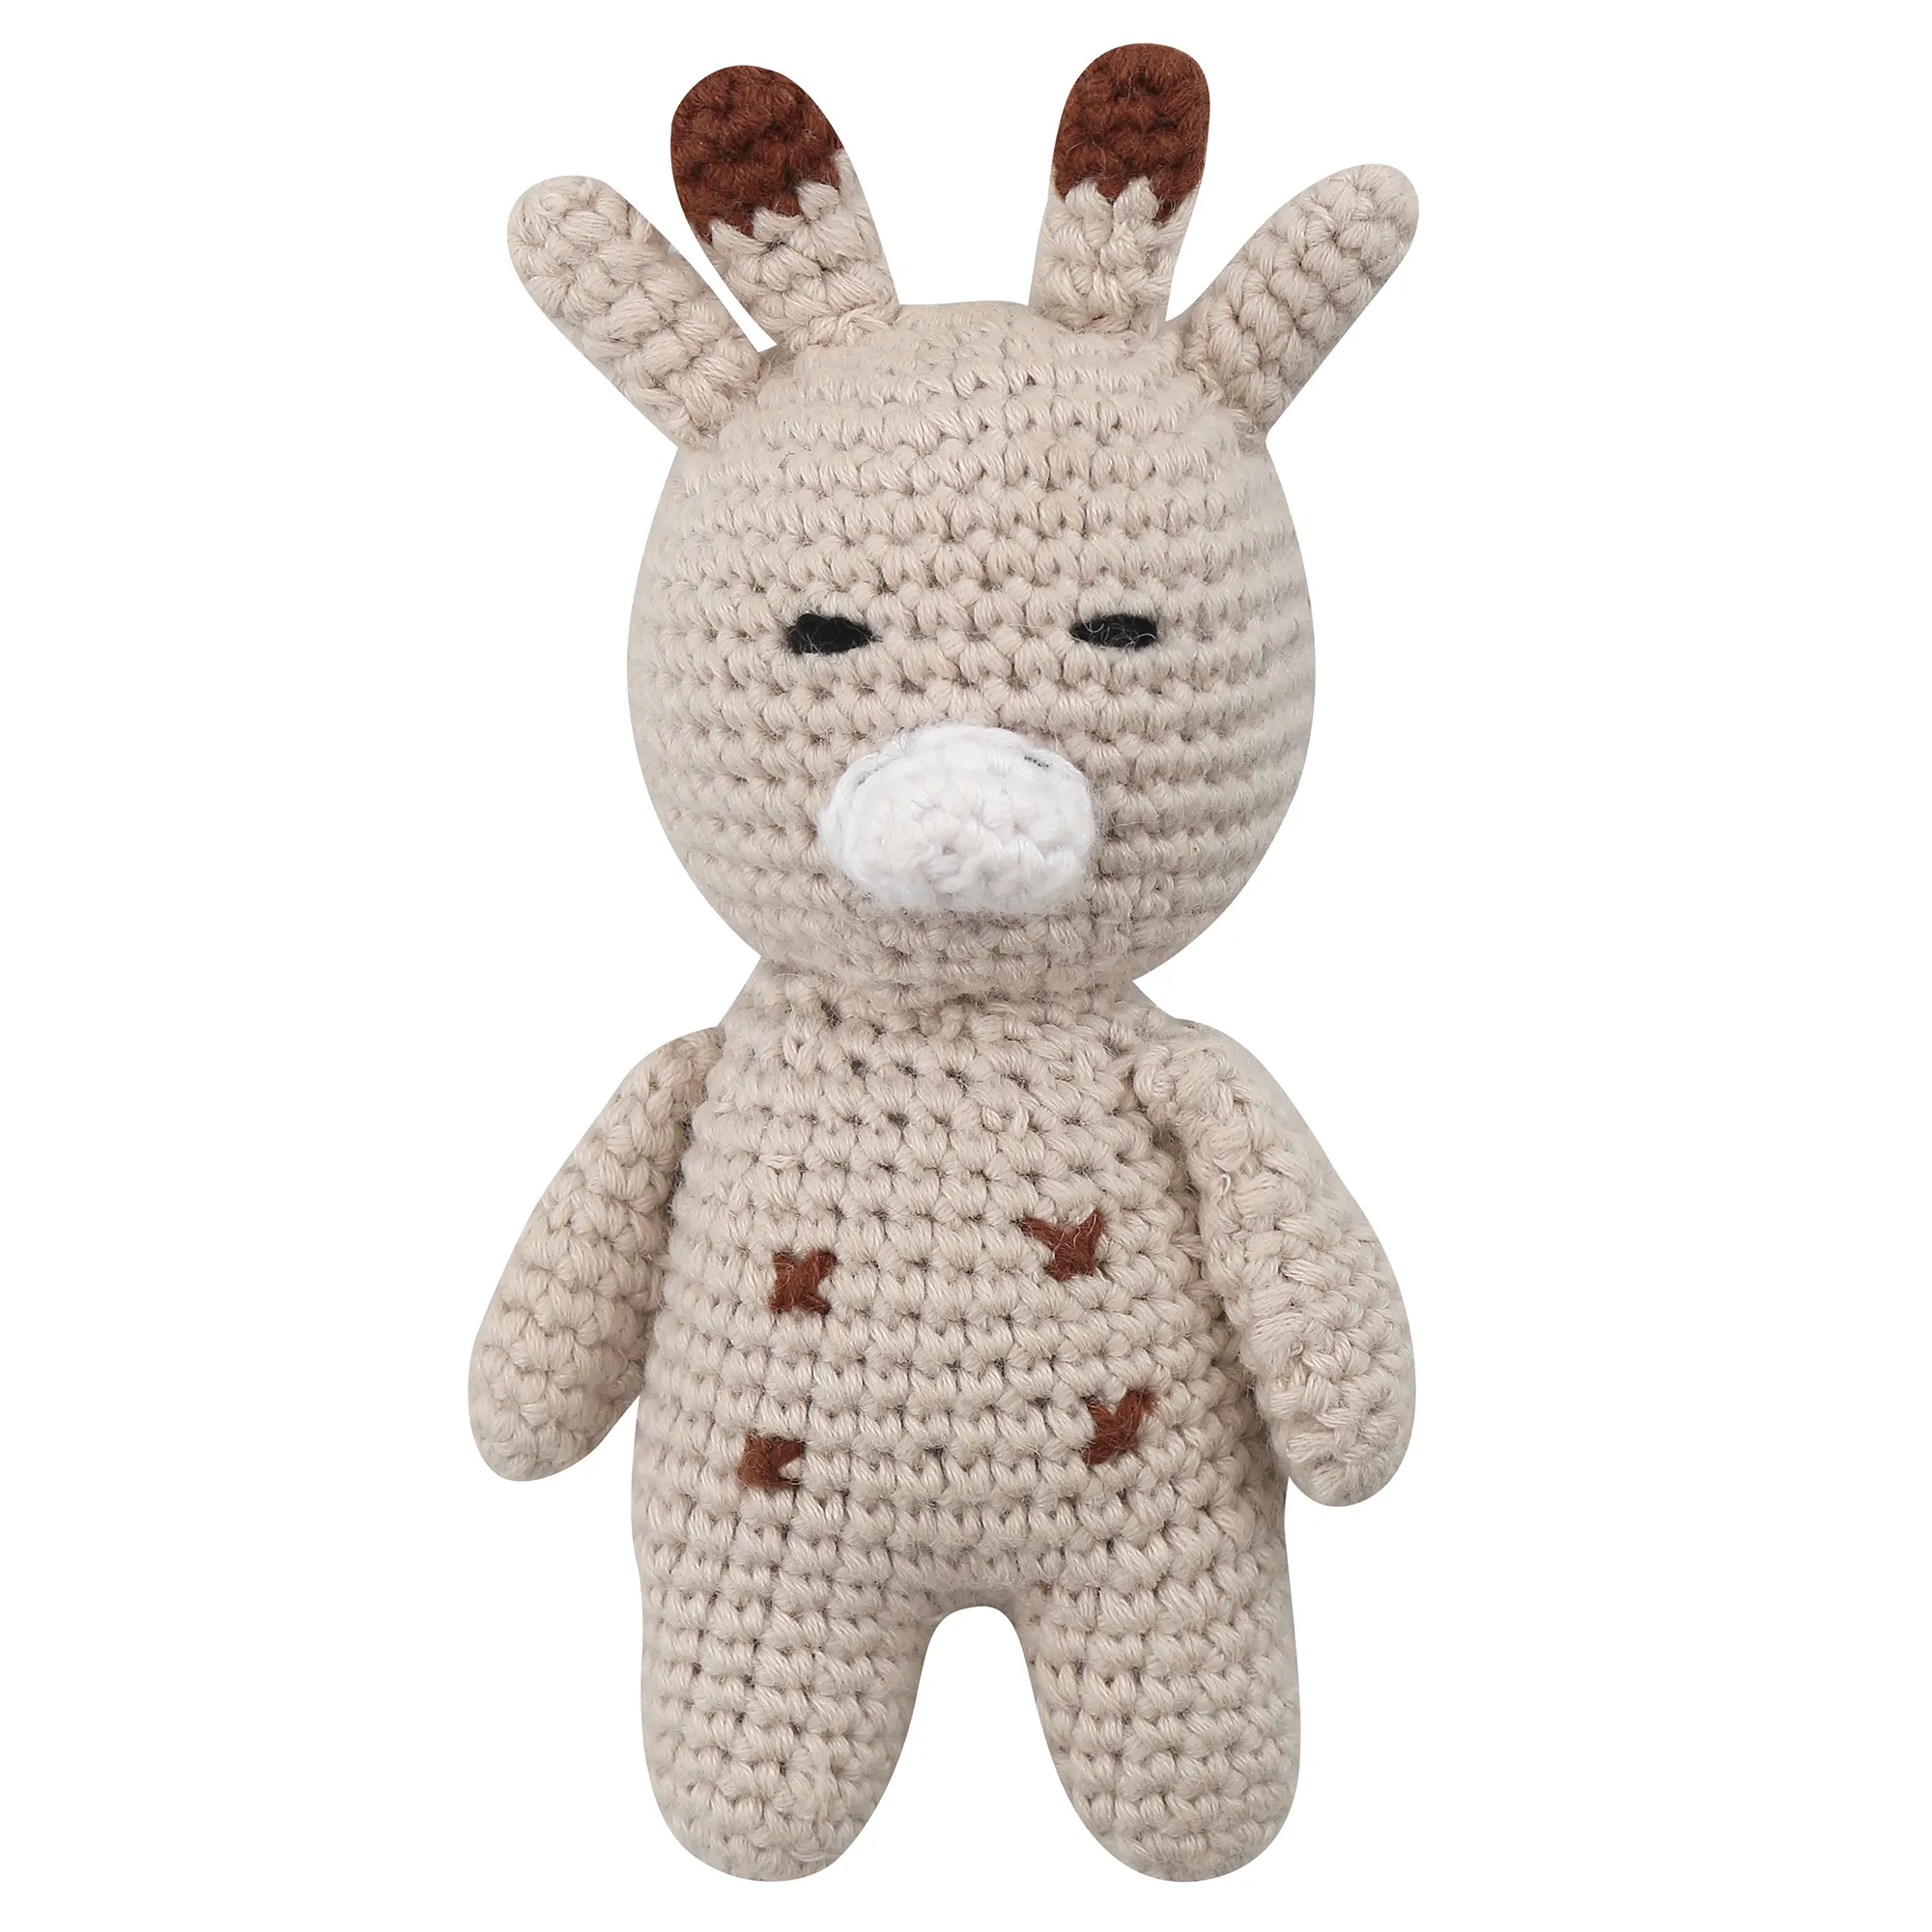 Neuankömmling Baby Weave Toy Baumwolle Tier Amigurumi Handmade Custom ized Design Safe für Baby Häkel spielzeug